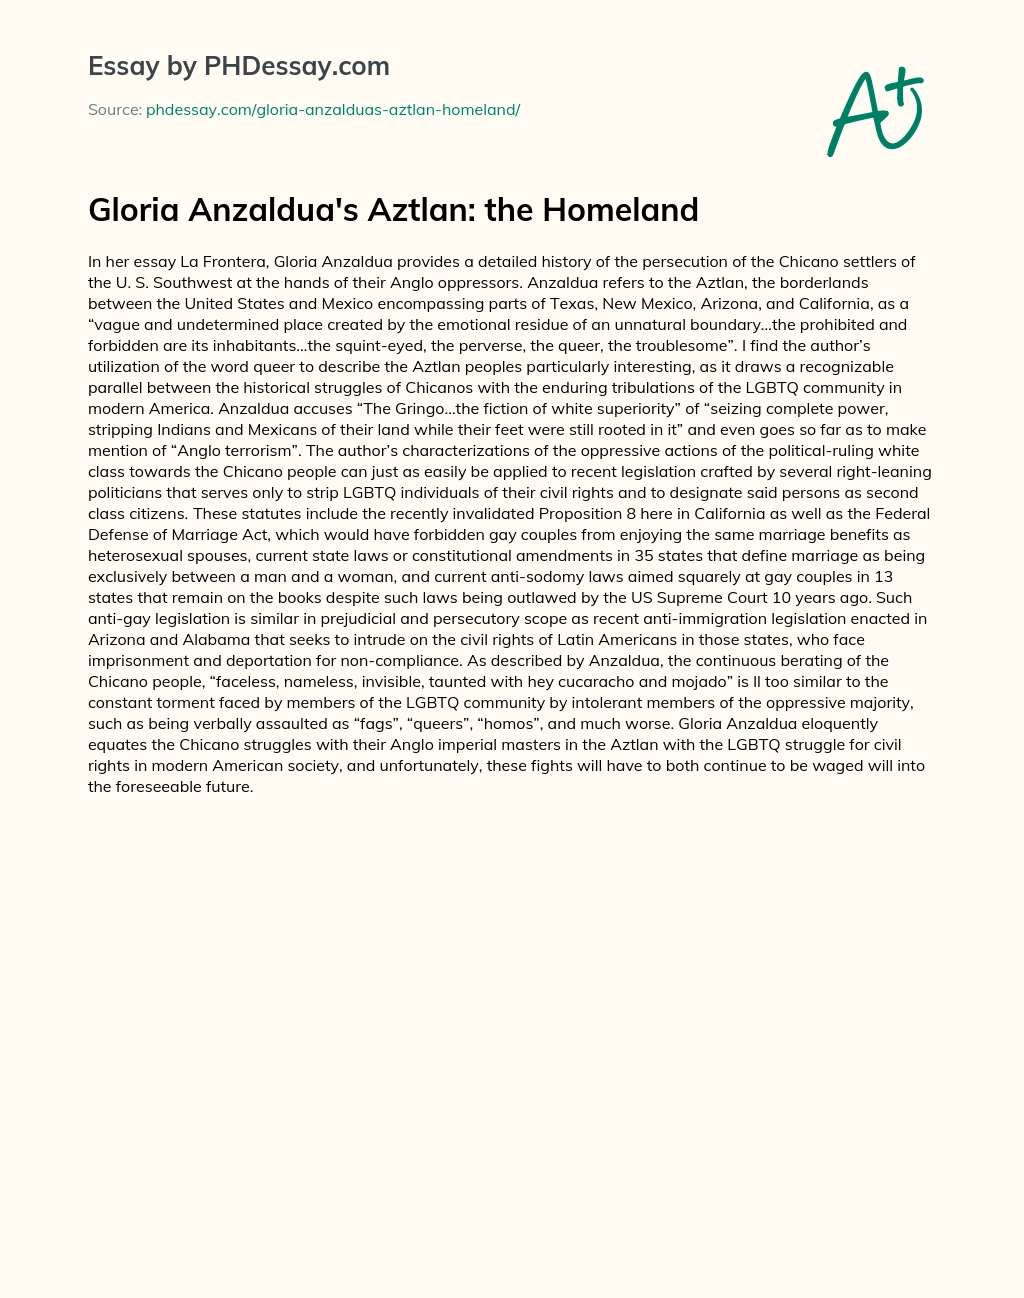 Gloria Anzaldua’s Aztlan: the Homeland essay